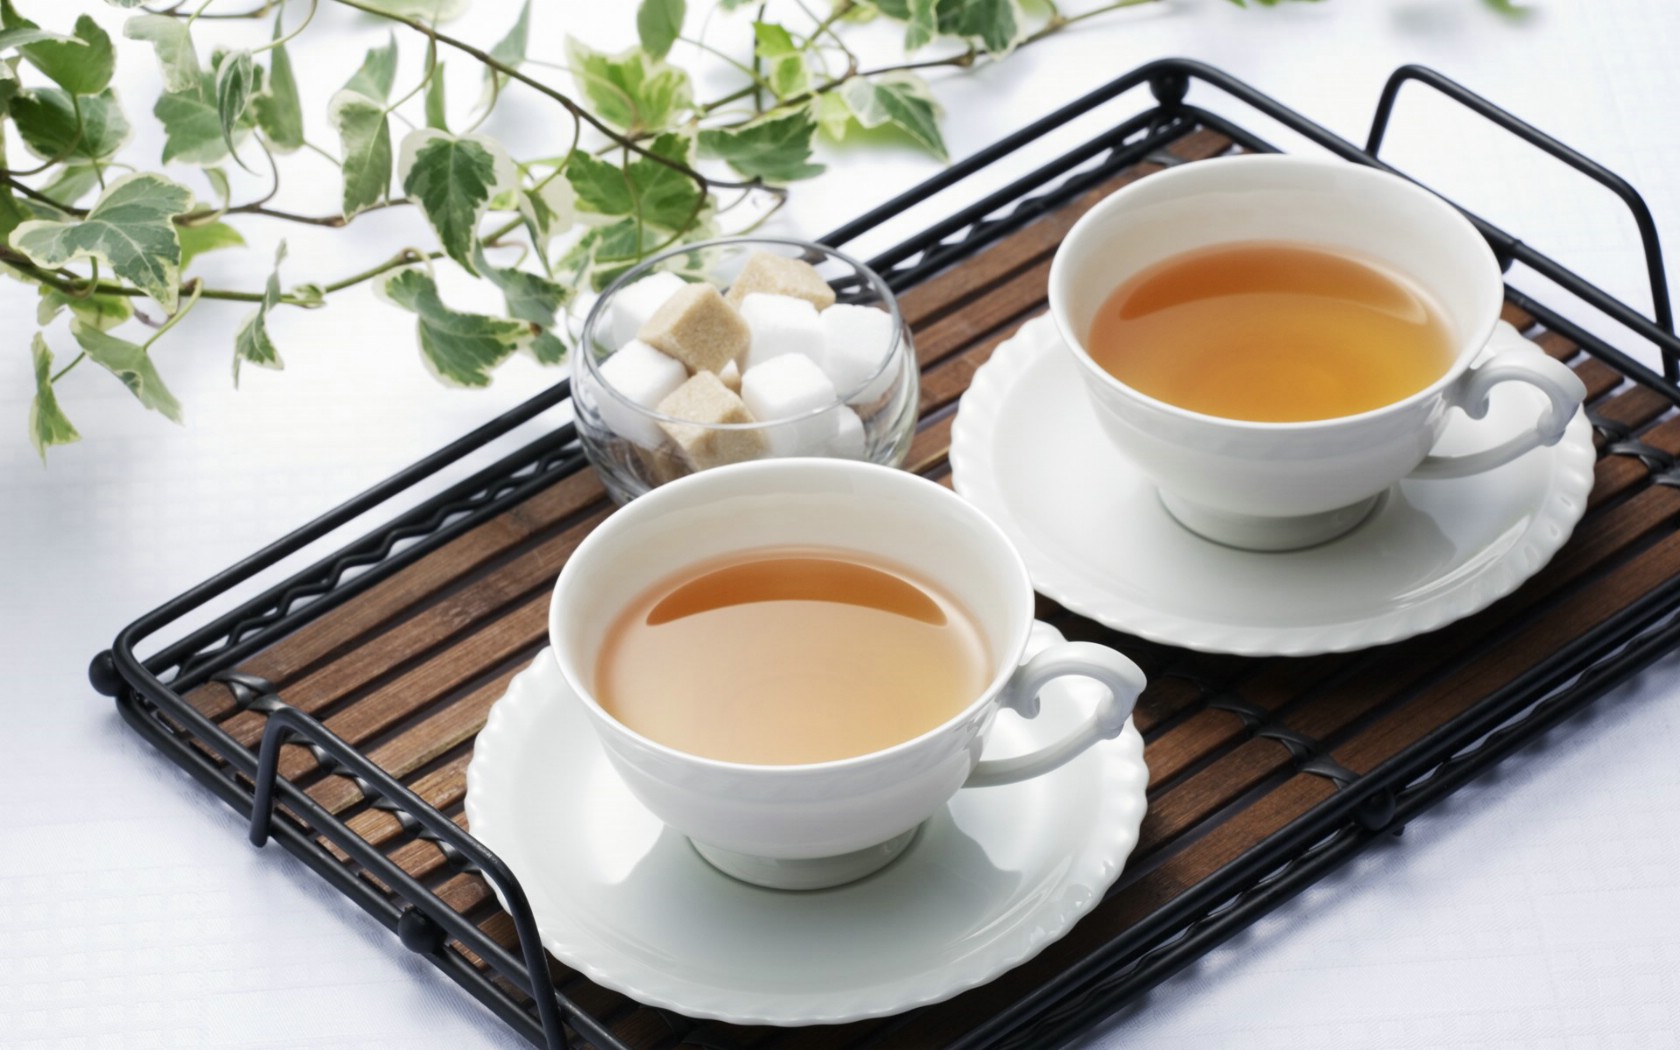 壁纸1680x1050 日本新茶图片 日本茶道摄影壁纸 日本茶道文化与健康饮品壁纸 日本茶道文化与健康饮品图片 日本茶道文化与健康饮品素材 摄影壁纸 摄影图库 摄影图片素材桌面壁纸